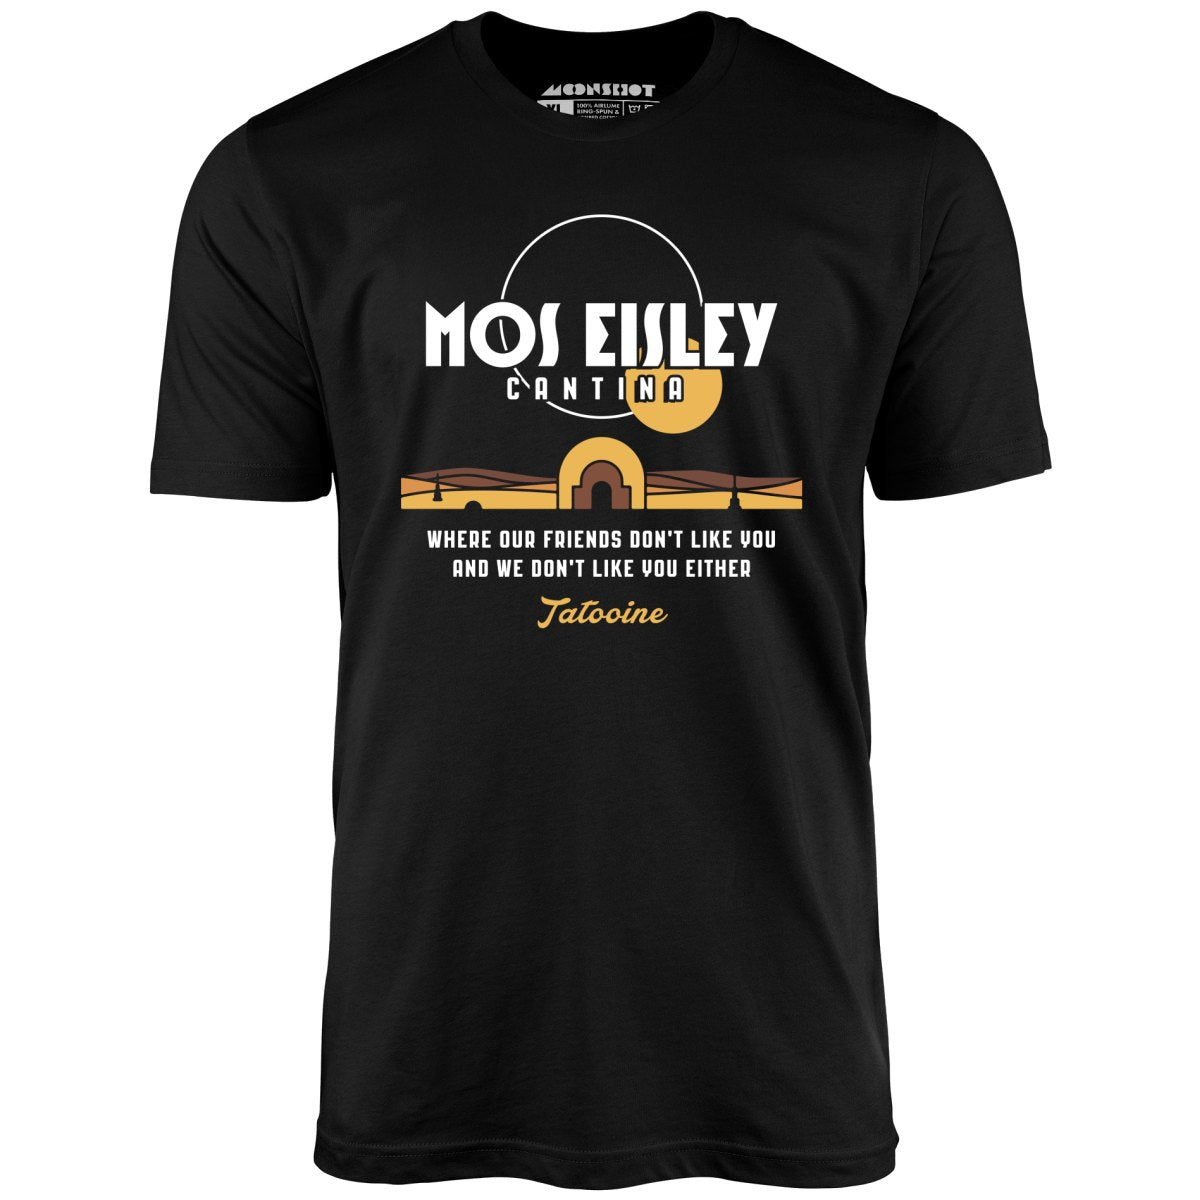 Mos Eisley Cantina - Unisex T-Shirt